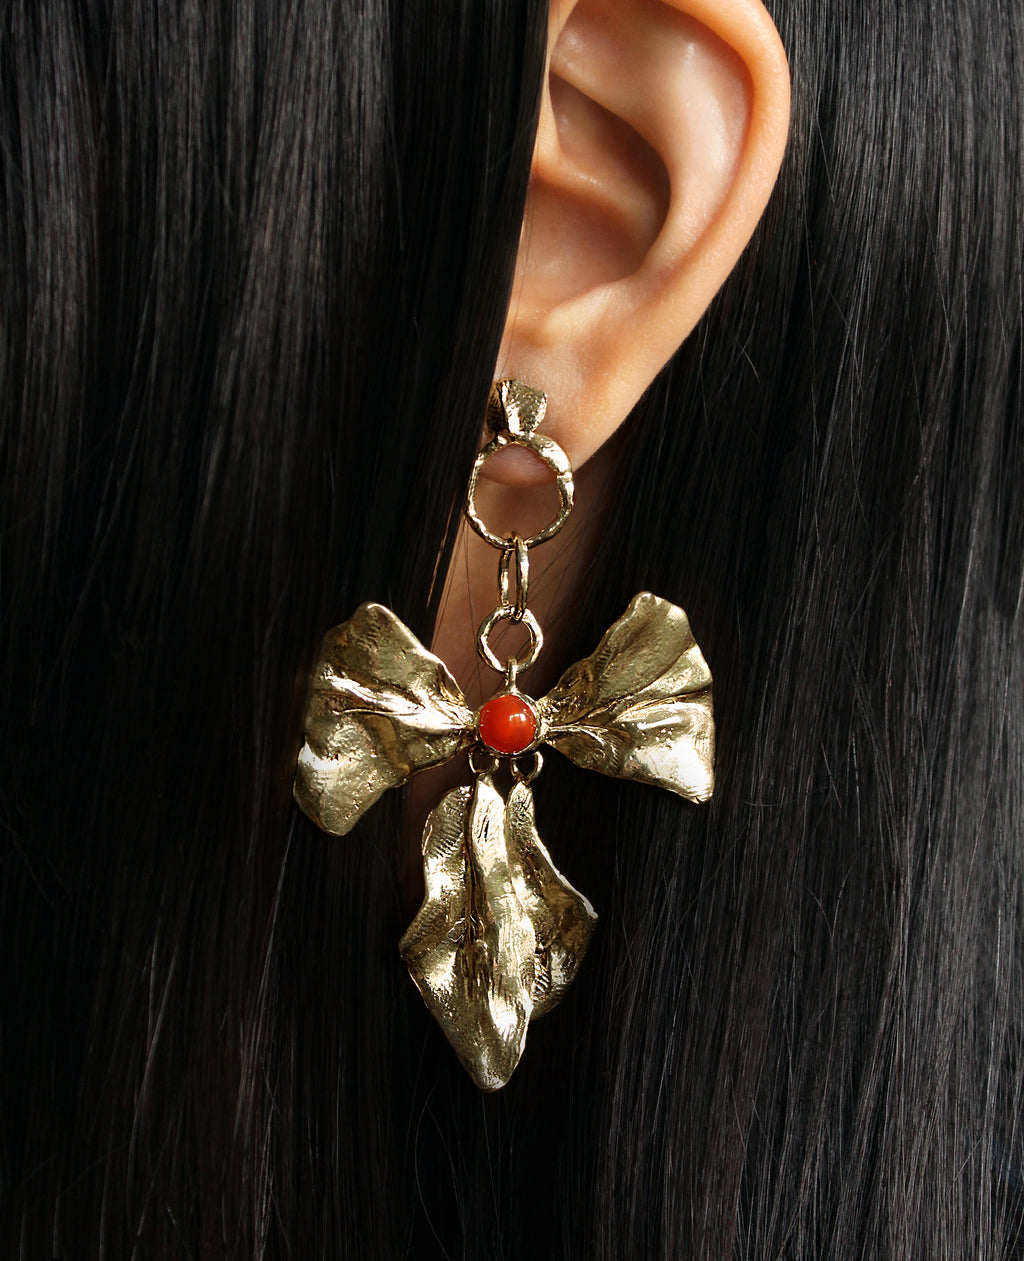 REIGN BOW // Boucles d'oreilles avec cornaline - ORA-C jewelry - bijoux faits main par Caroline Pham, designer indépendante basée à Montréal